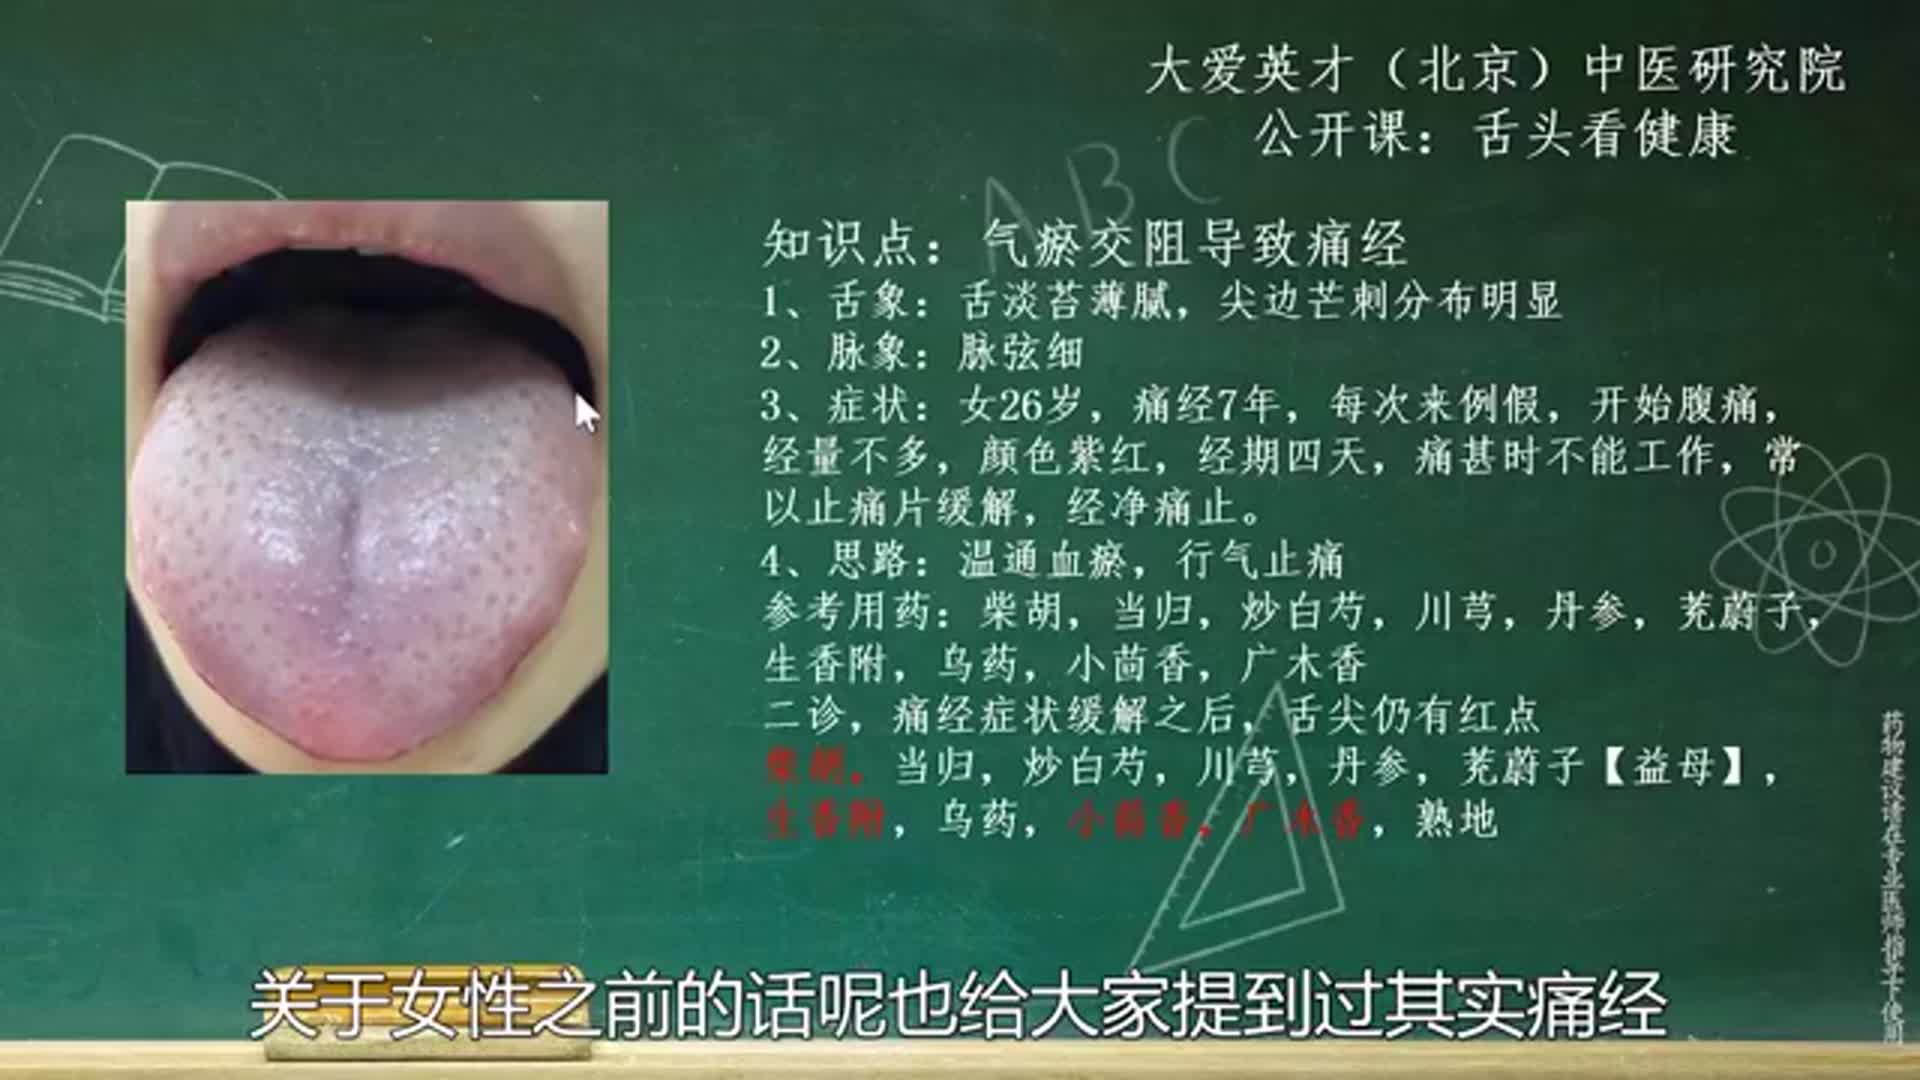 舌象分析:由于气滞血瘀导致慢慢出现痛经建议温通血脉